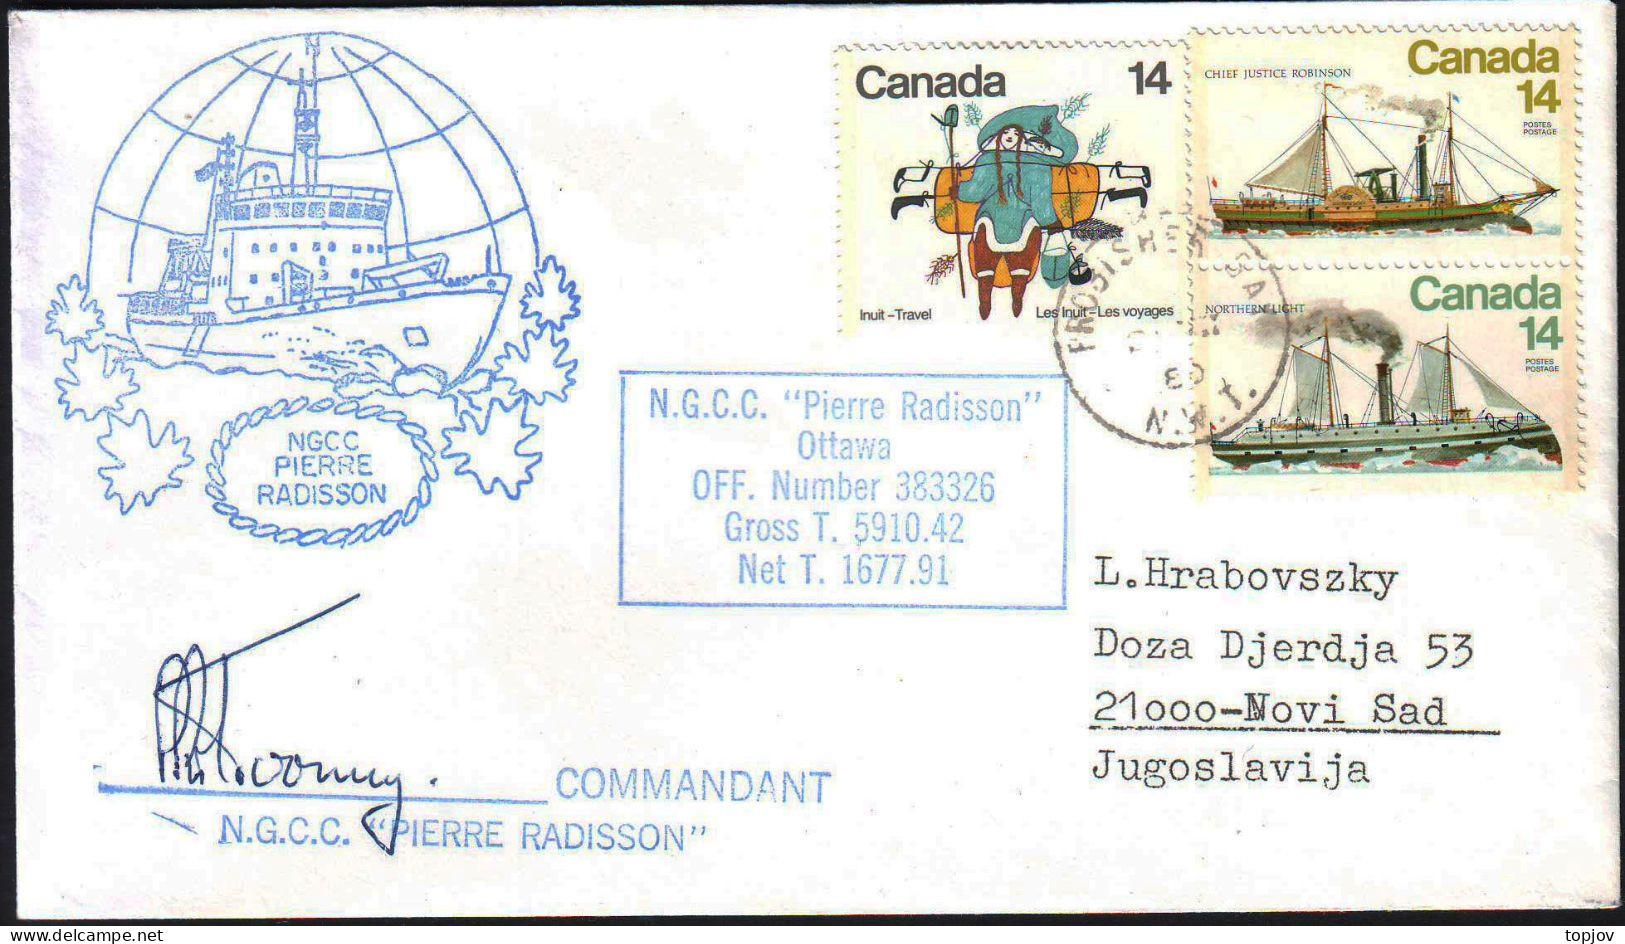 CANADA - N.G.C.C. PIERRE RADISSON - 1980 - Bases Antarctiques